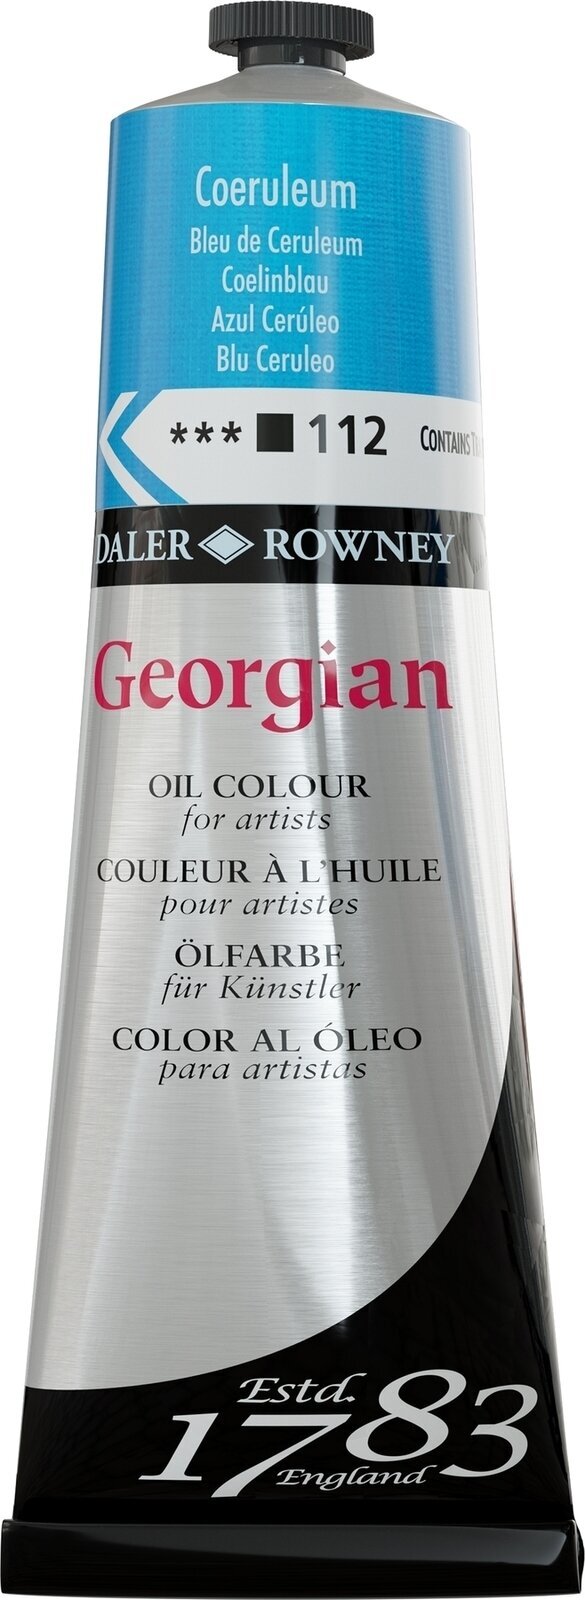 Χρώμα λαδιού Daler Rowney Georgian Λαδομπογιά Coeruleum 225 ml 1 τεμ.